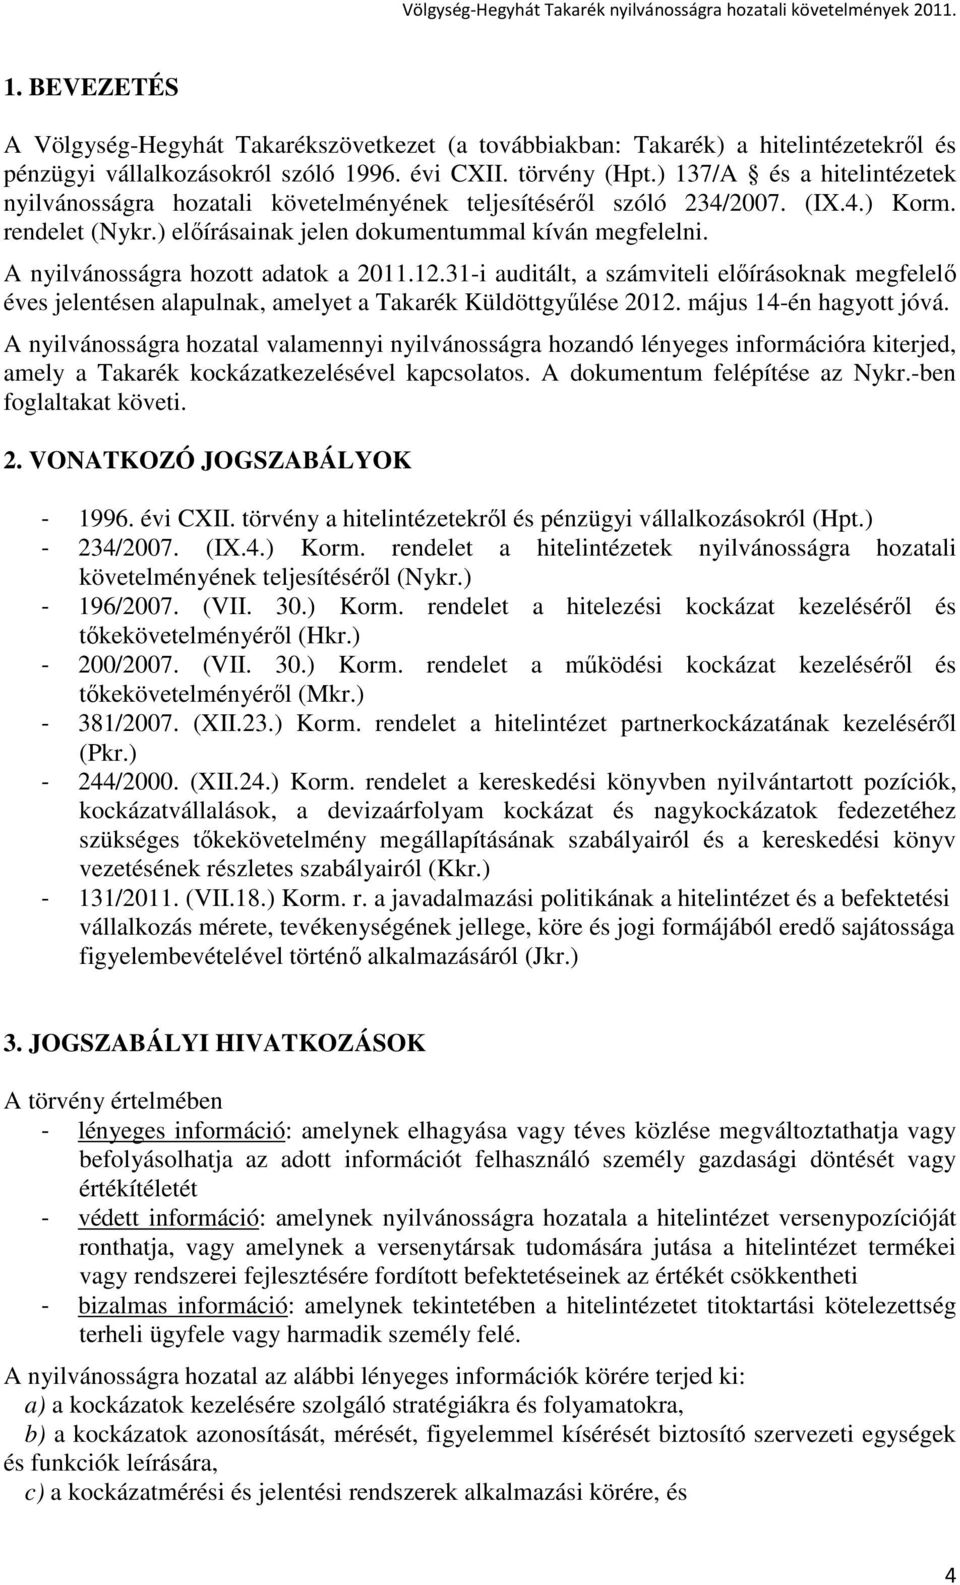 A nyilvánosságra hozott adatok a 2011.12.31-i auditált, a számviteli elıírásoknak megfelelı éves jelentésen alapulnak, amelyet a Takarék Küldöttgyőlése 2012. május 14-én hagyott jóvá.